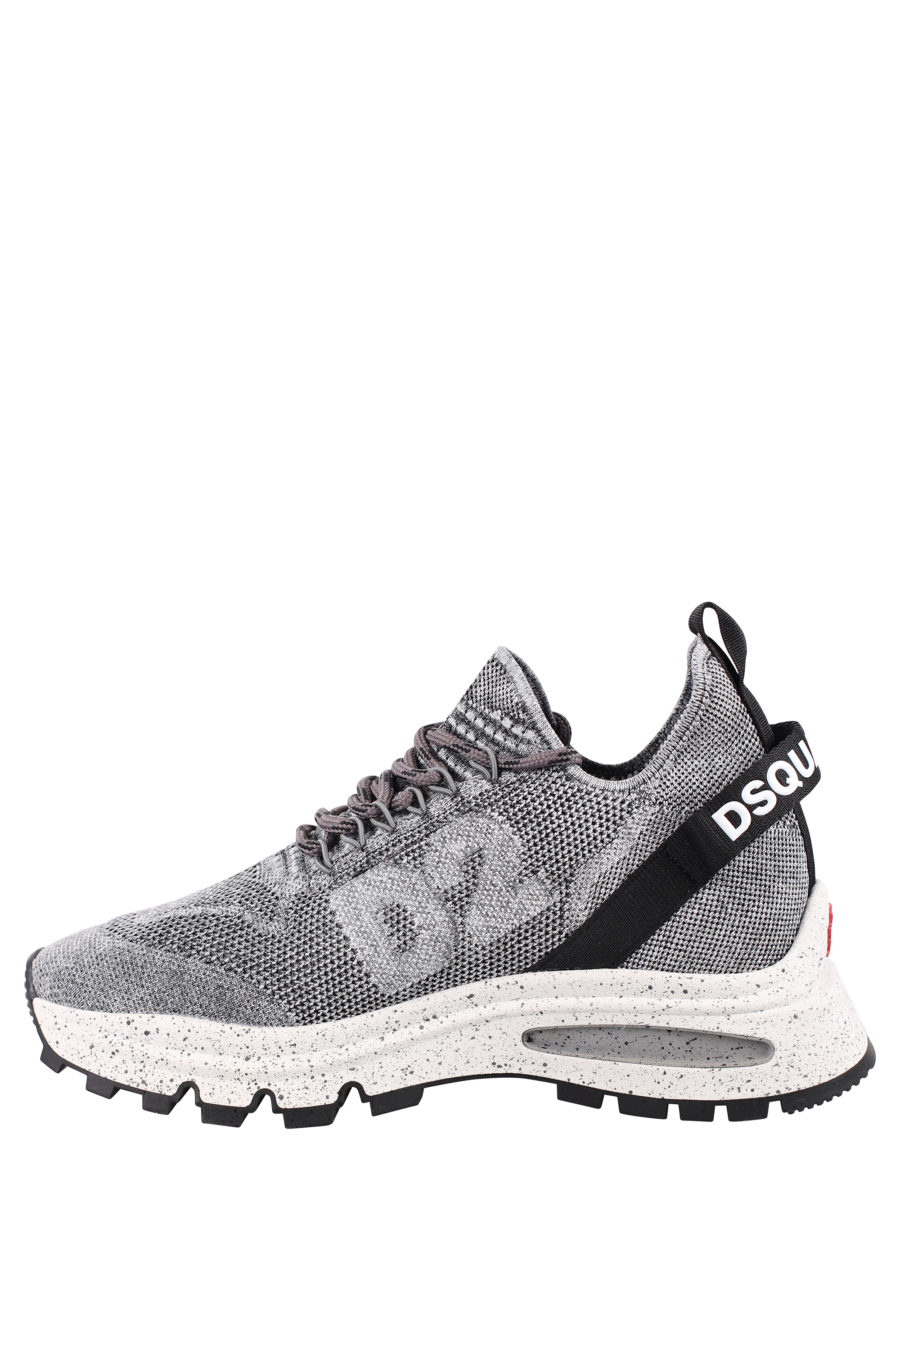 Zapatillas grises con logo pequeño blanco y "D2" - IMG 0714